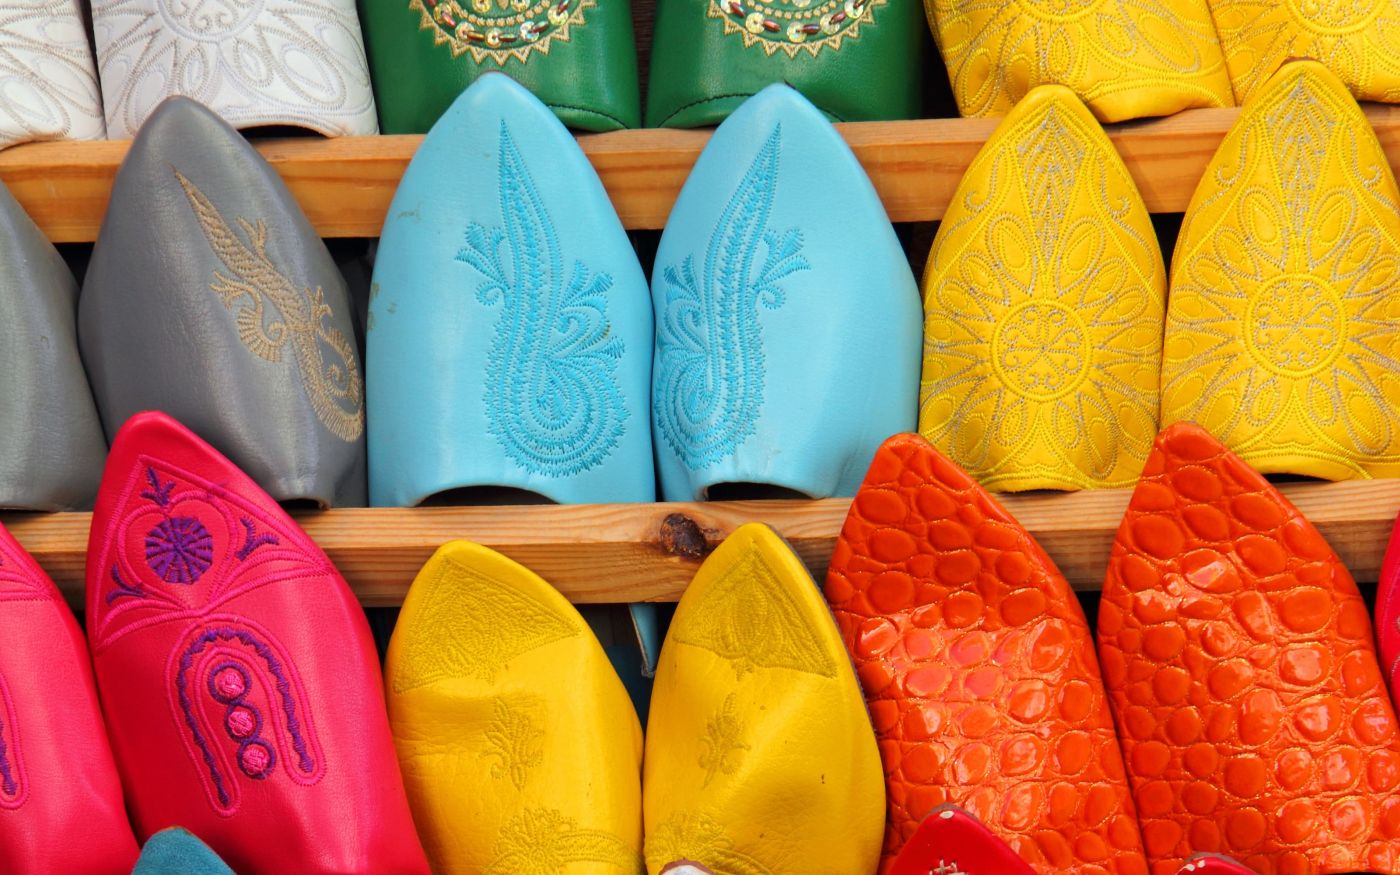 Bunte Babouches, für Marokko typische Slipper aus Leder